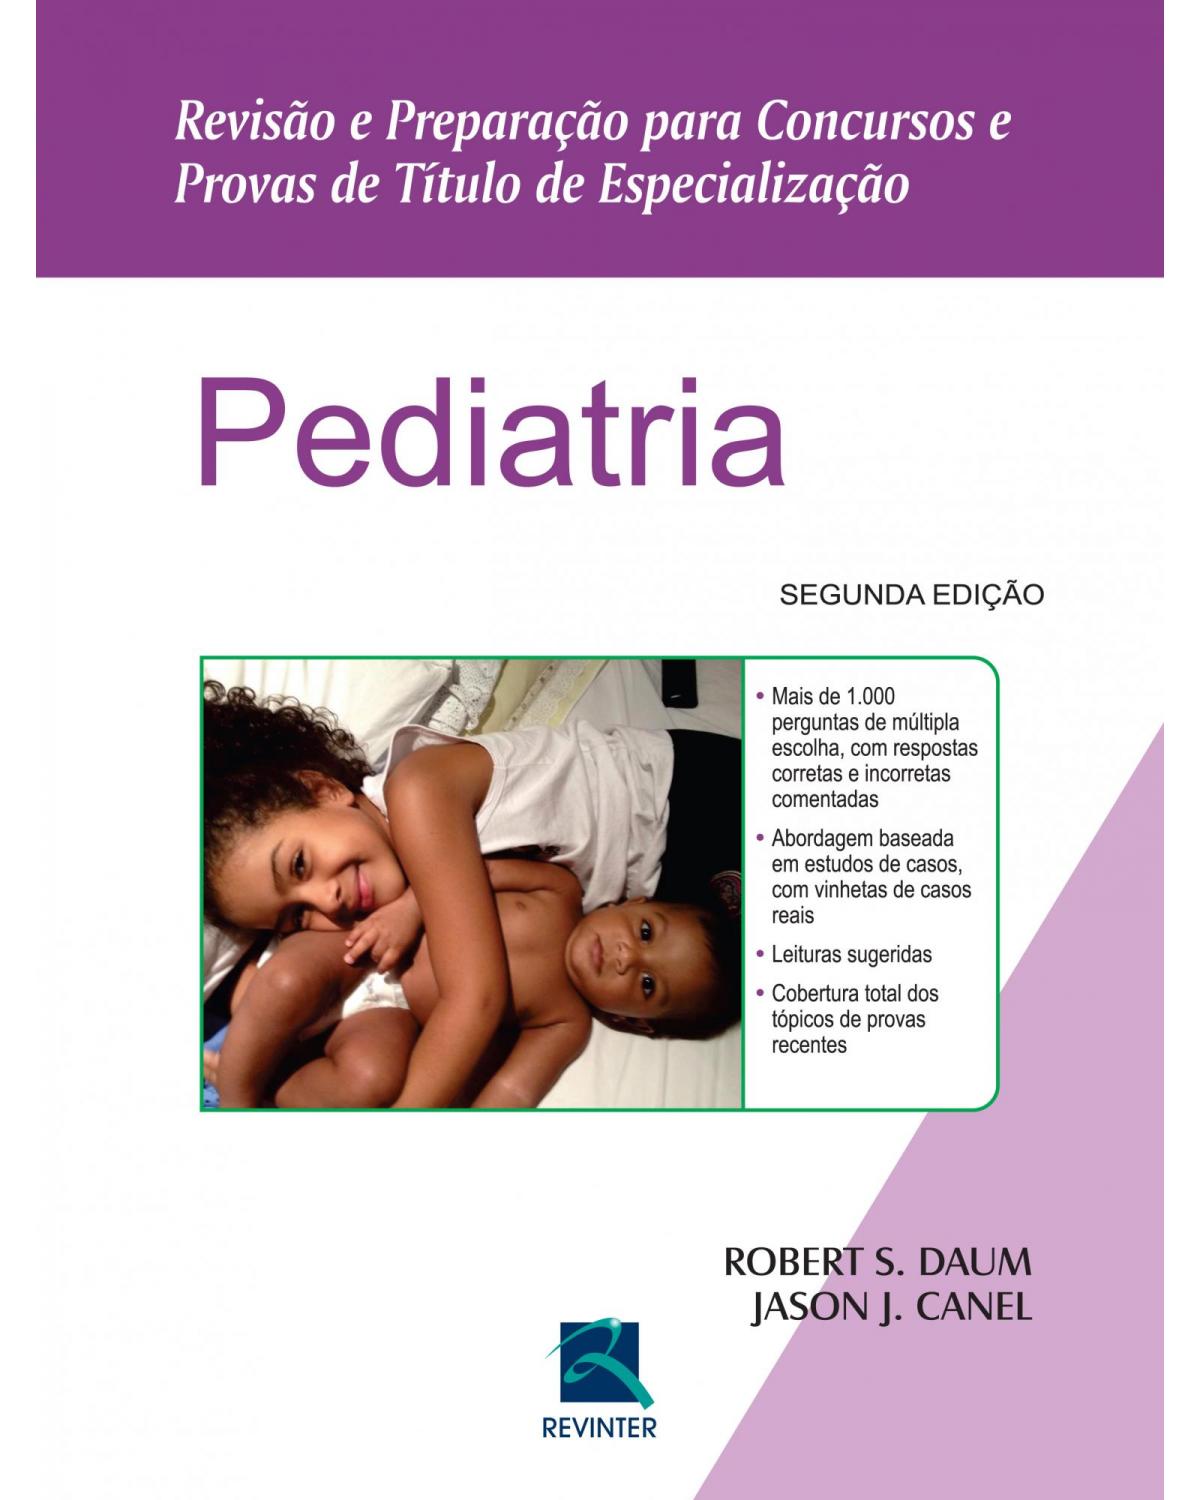 Pediatria - revisão e preparação para concursos e provas de título de especialização - 2ª Edição | 2015